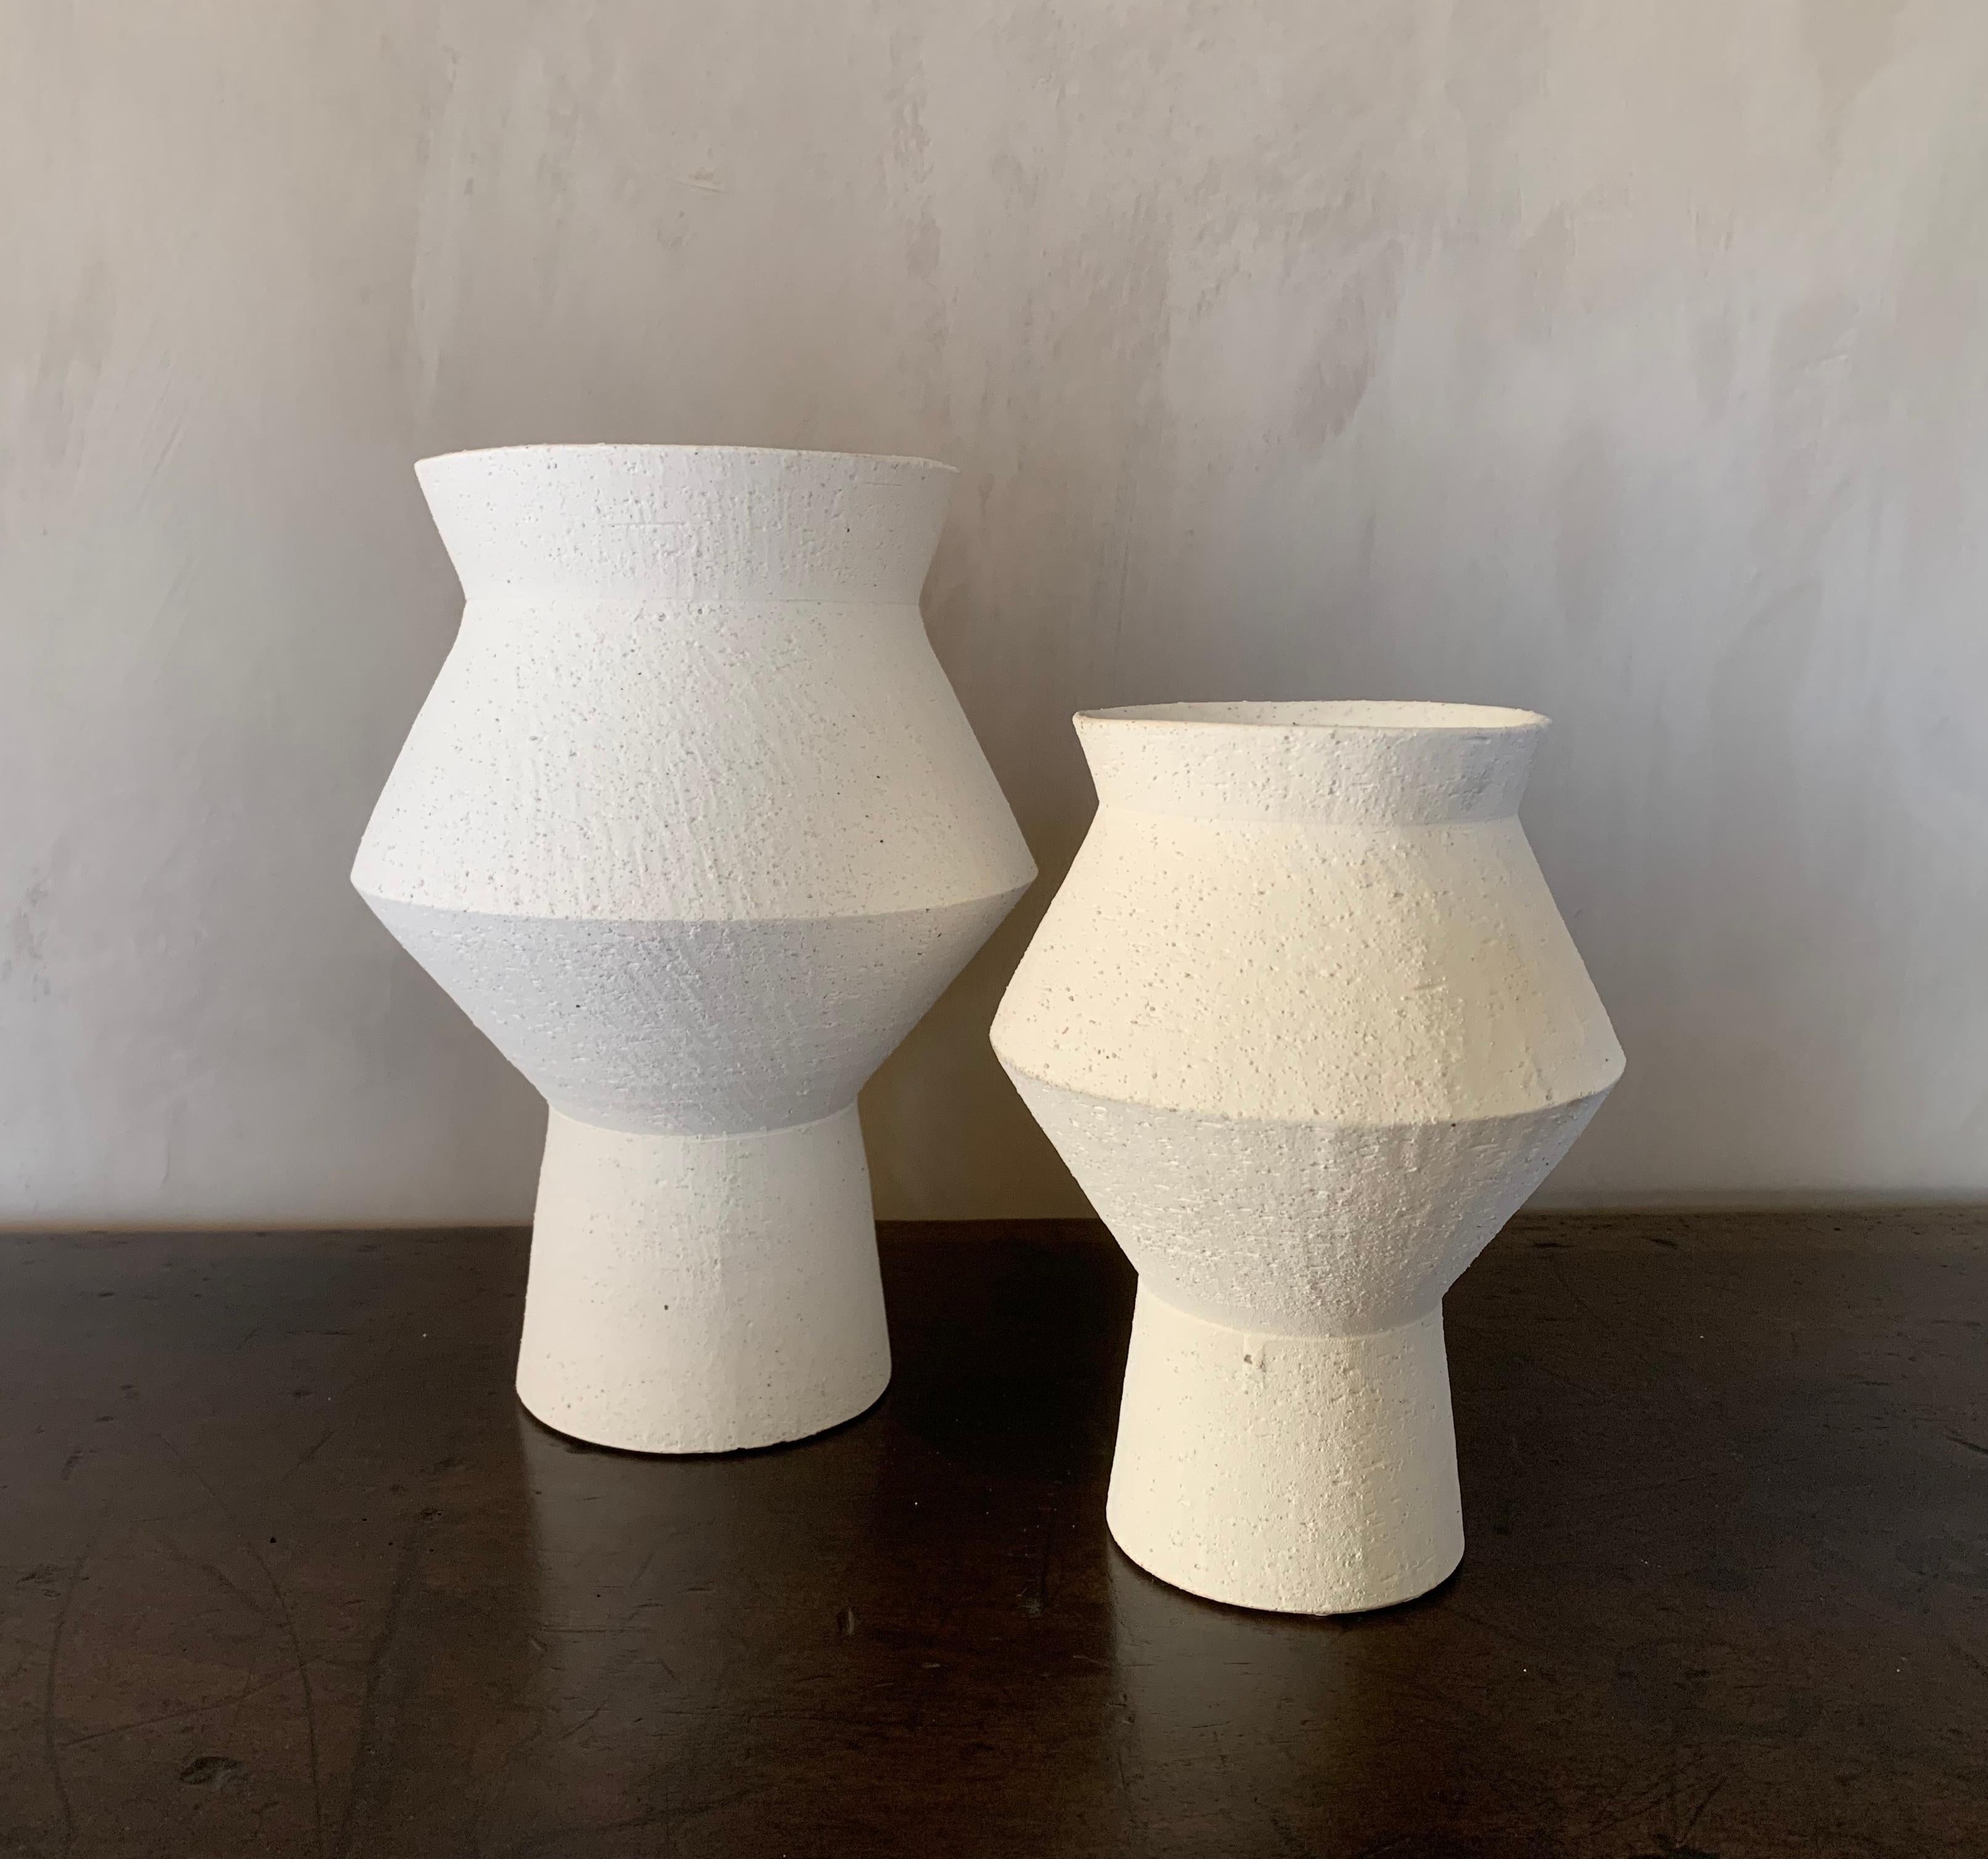 Un ensemble de 2 vases géométriques contemporains en céramique. L'extérieur du tapis n'est pas émaillé et l'intérieur est émaillé à la brosse. Des proportions adorables, des techniques classiques et un design moderniste.